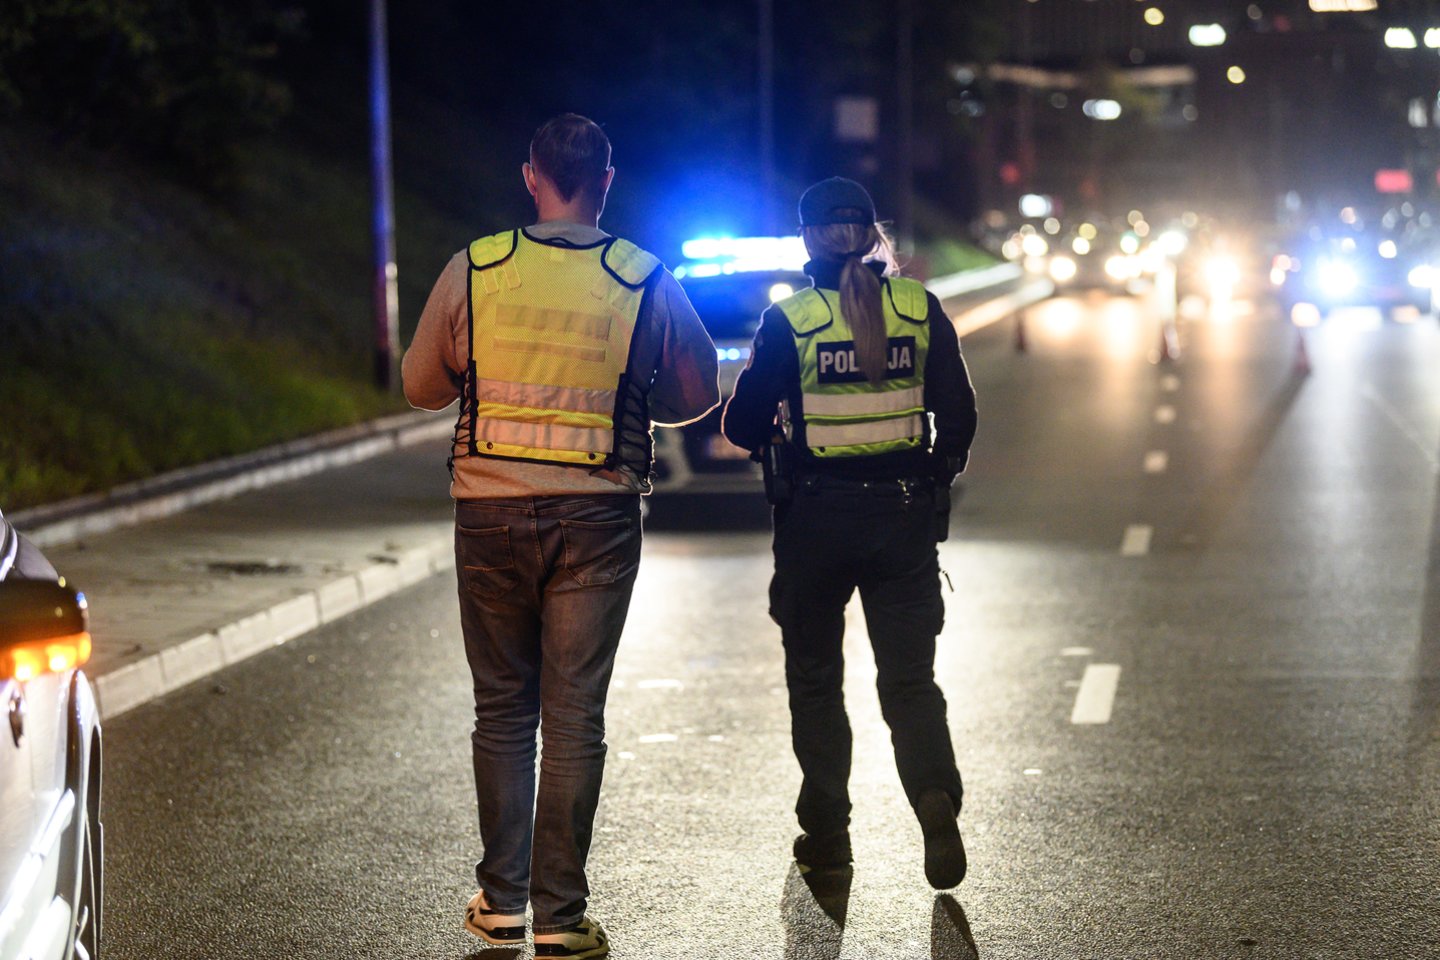 Policijos pareigūnai patruliuodami visoje šalyje tiek šviesiuoju, tiek tamsiuoju paros metu reguliuos eismą.<br>V.Skaraičio nuotr.